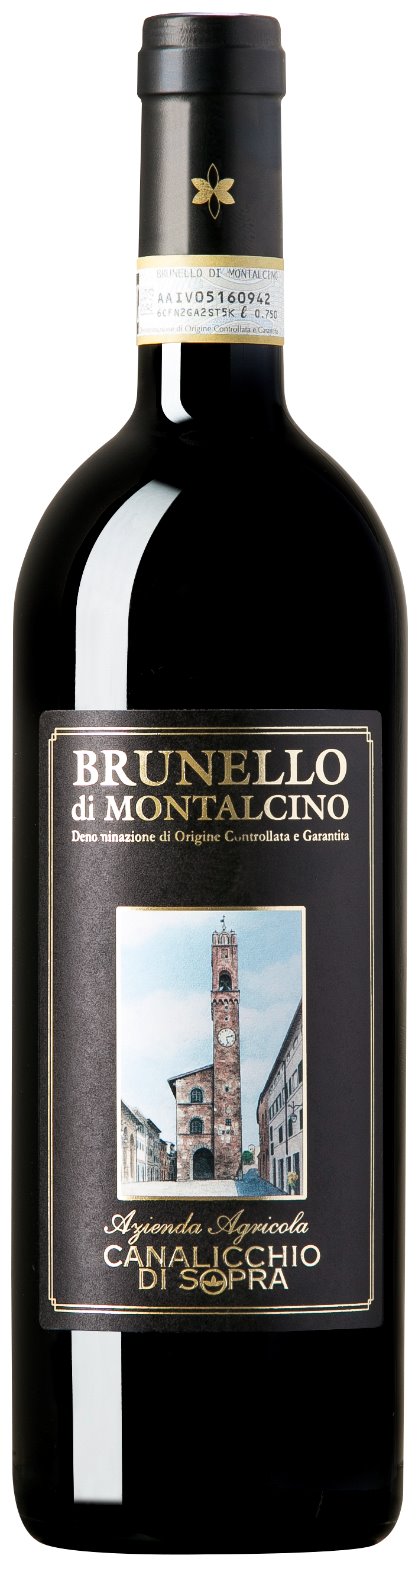 Canalicchio di Sopra Brunello di Montalcino 2006 - 750ml